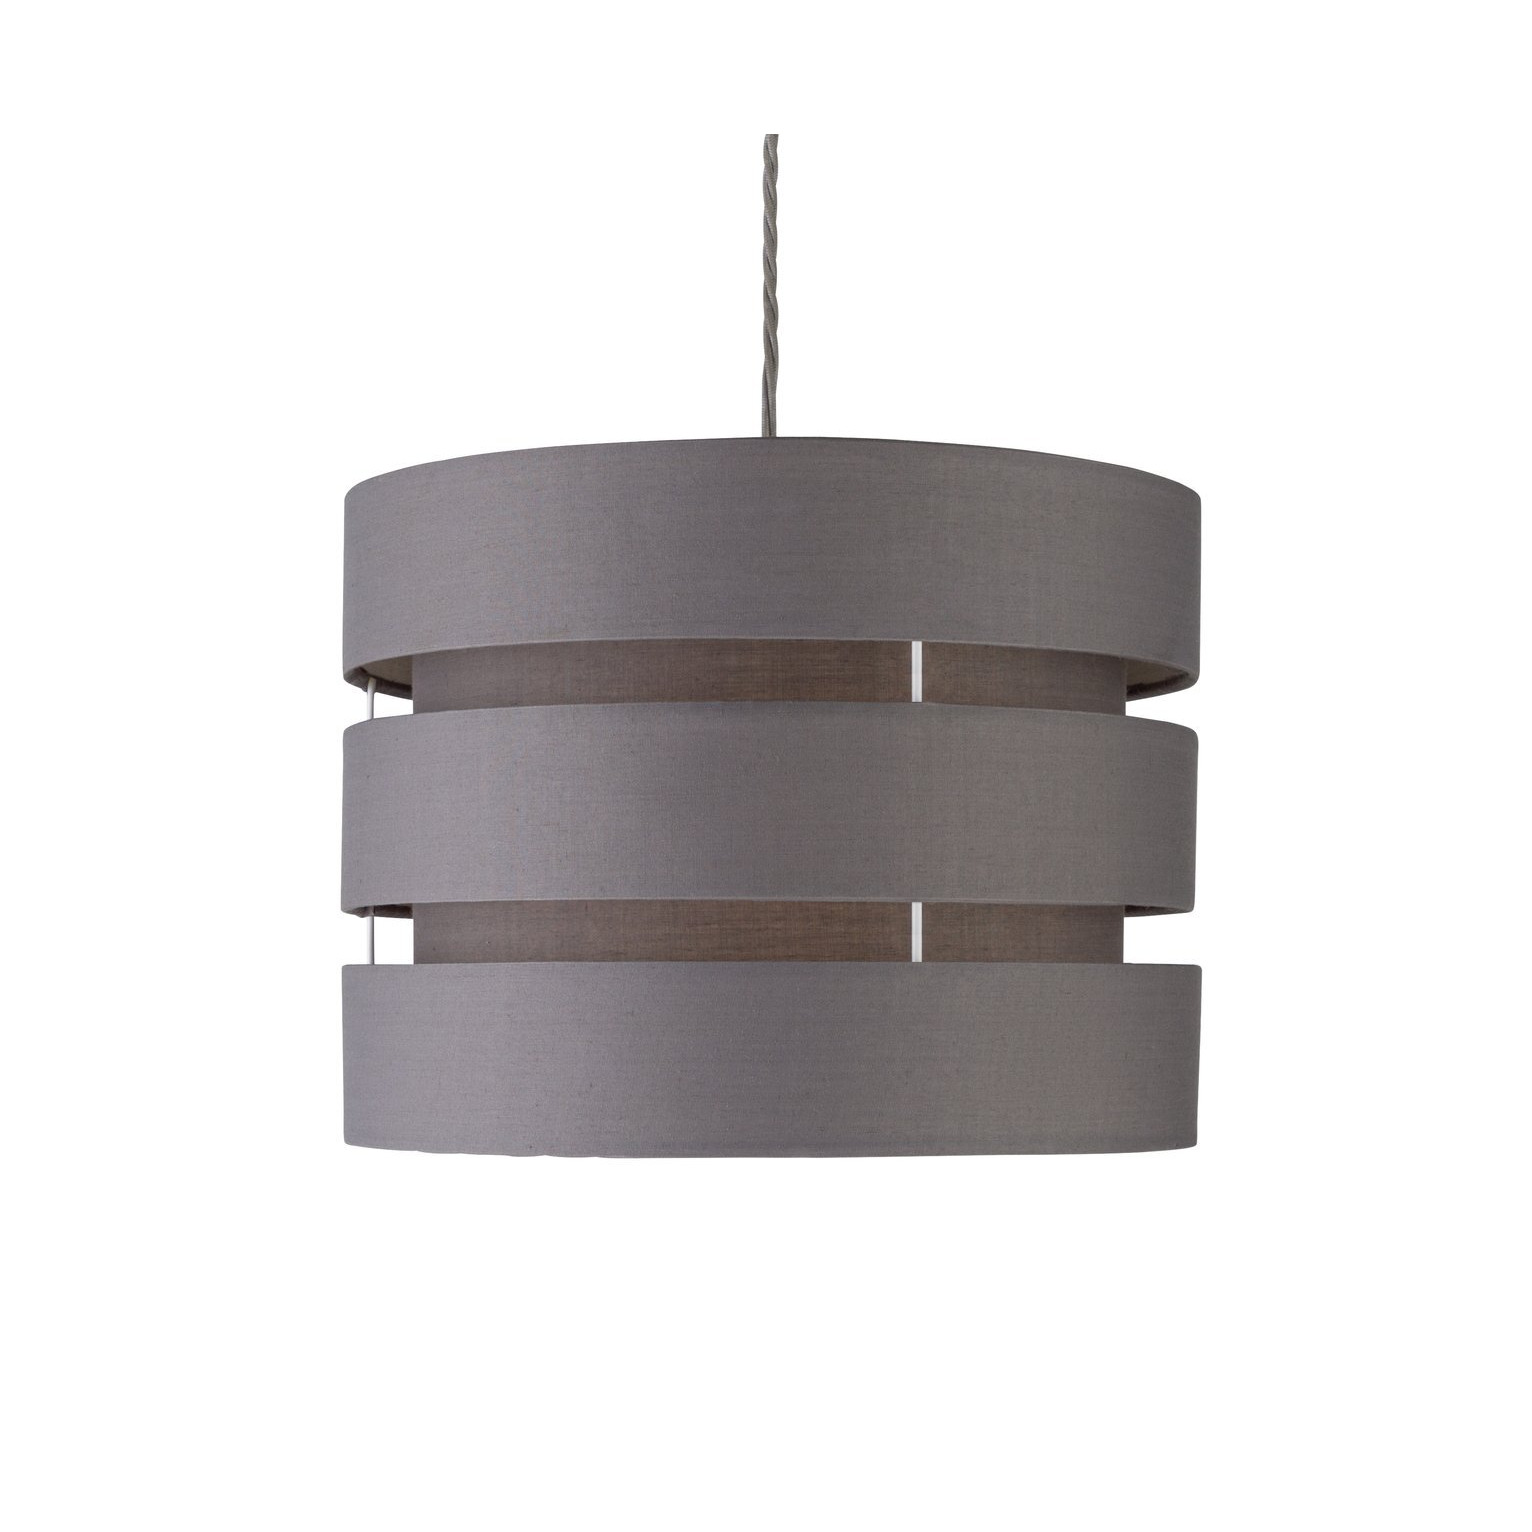 Argos Home 3 Tier 30cm Lamp Shade - Flint Grey - image 1